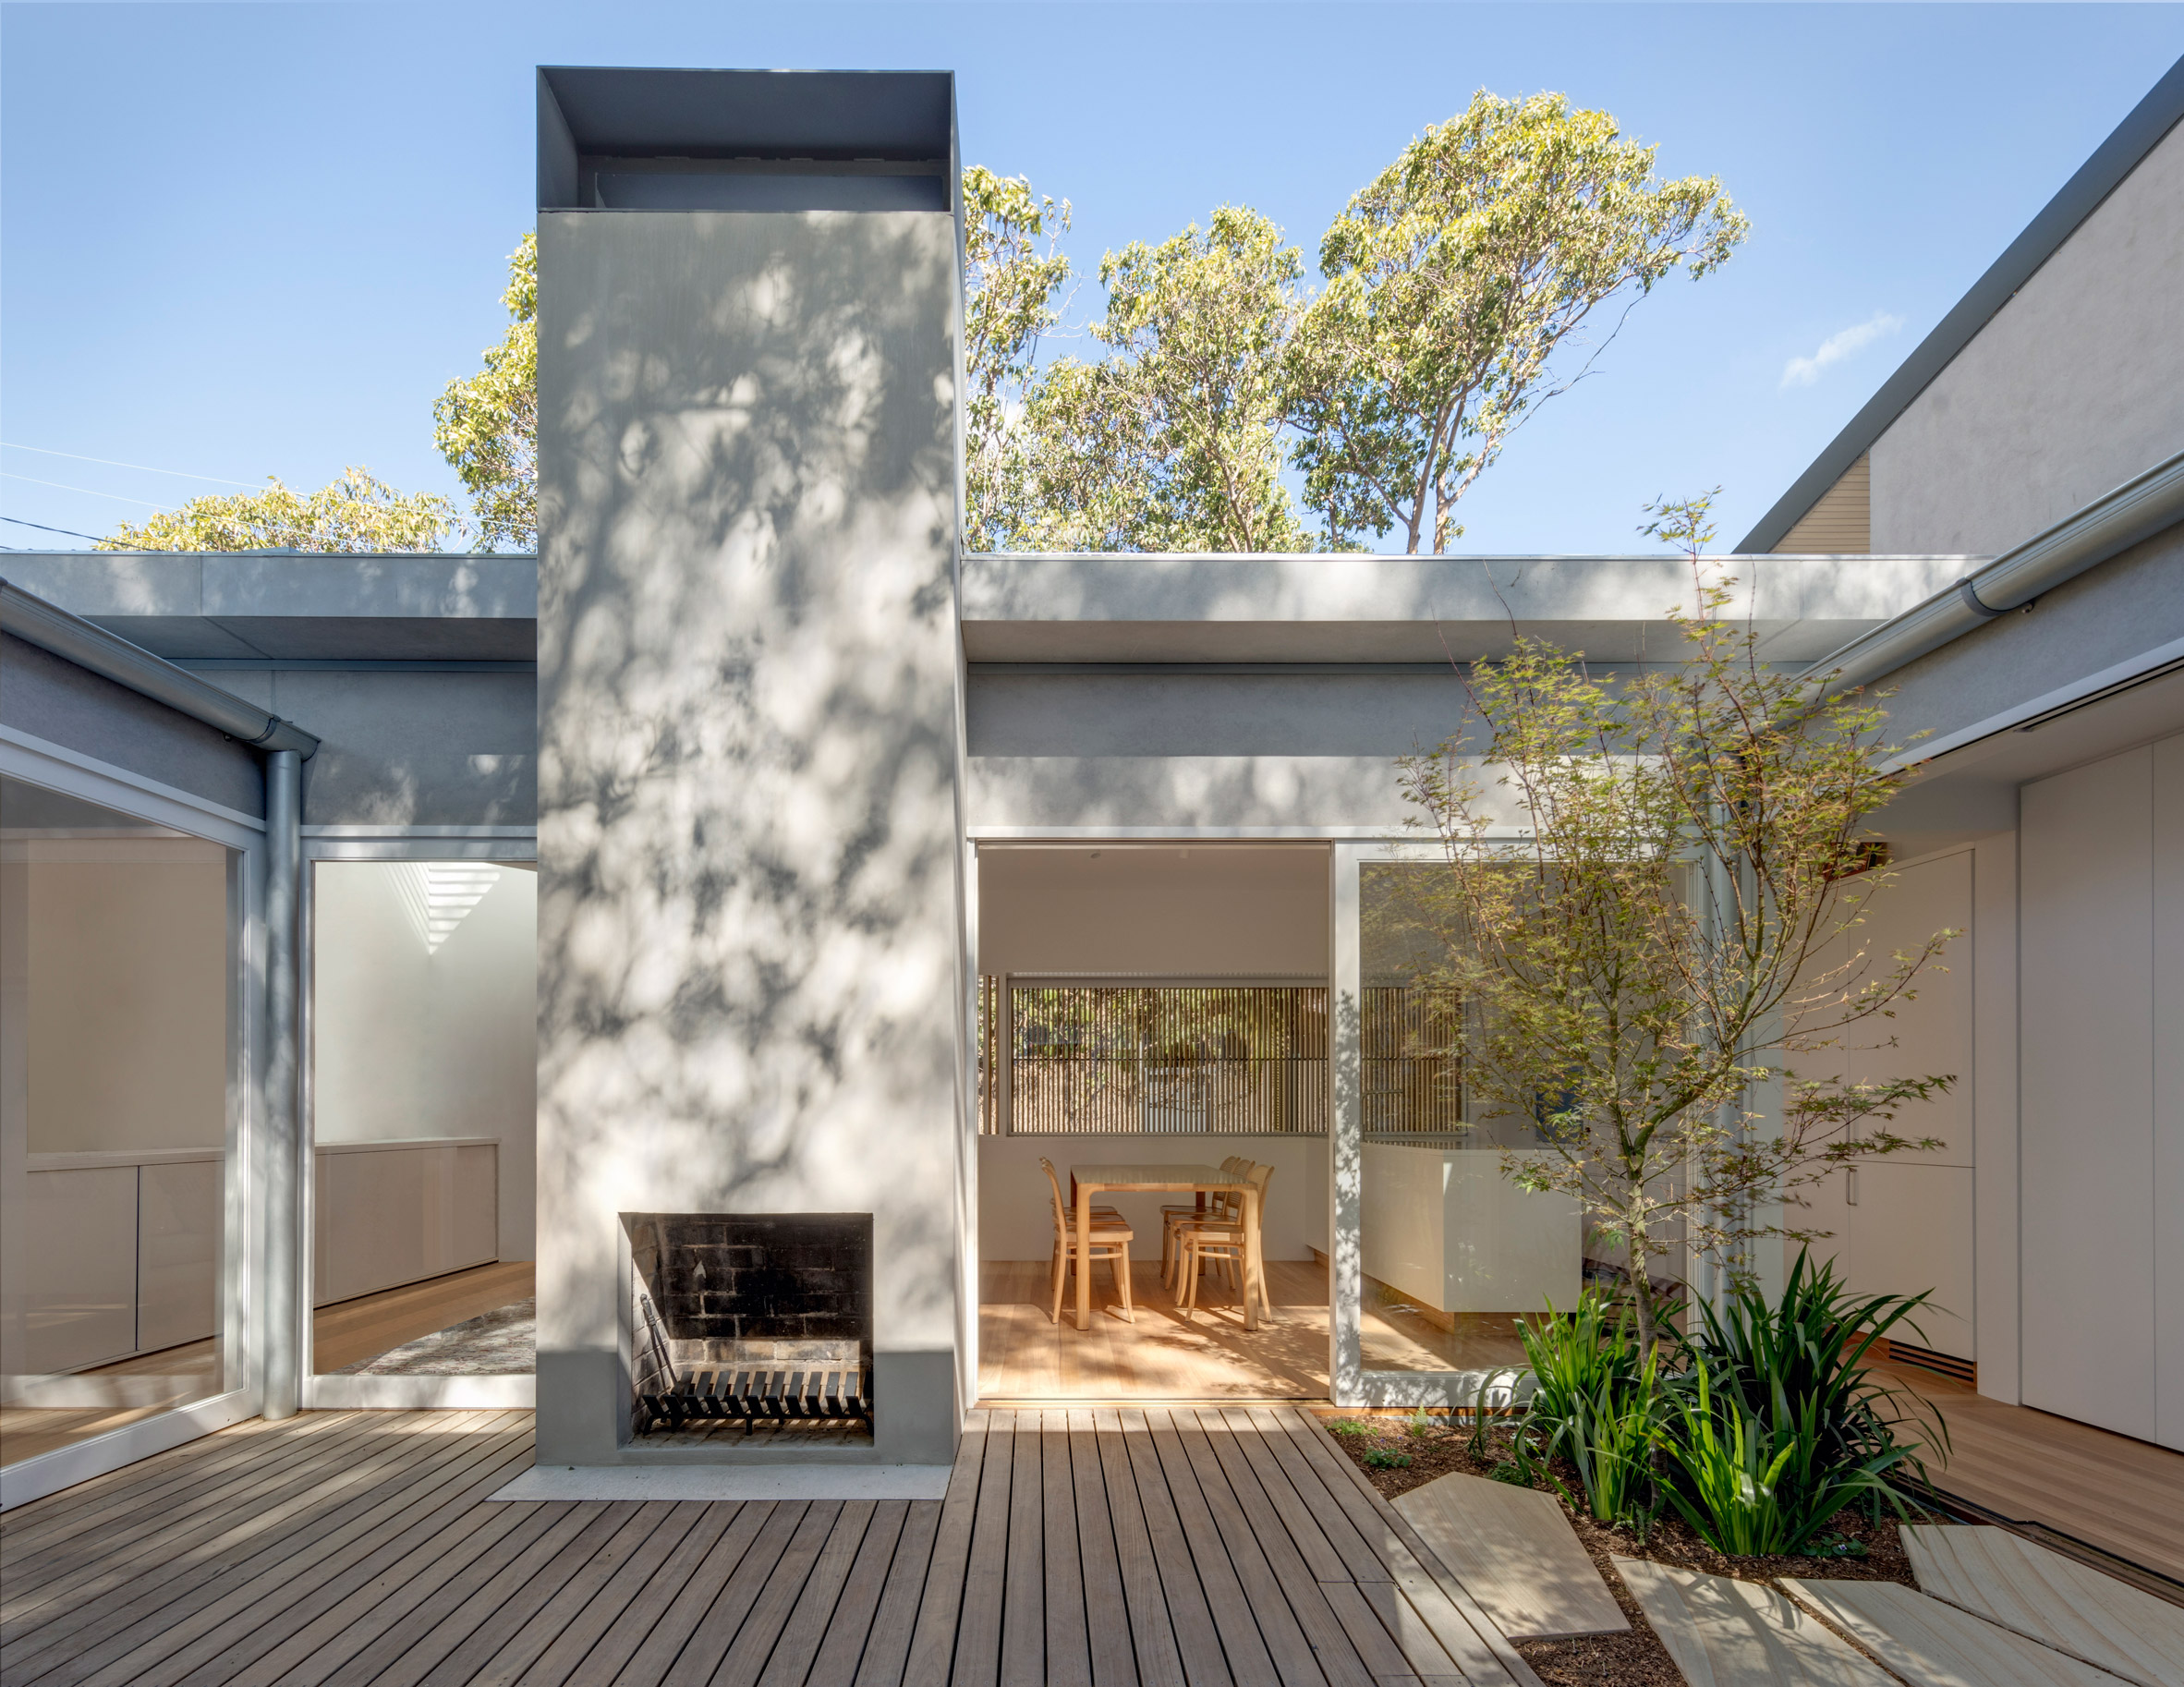 Panovscott rearranges Sydney cottage around a central courtyard garden